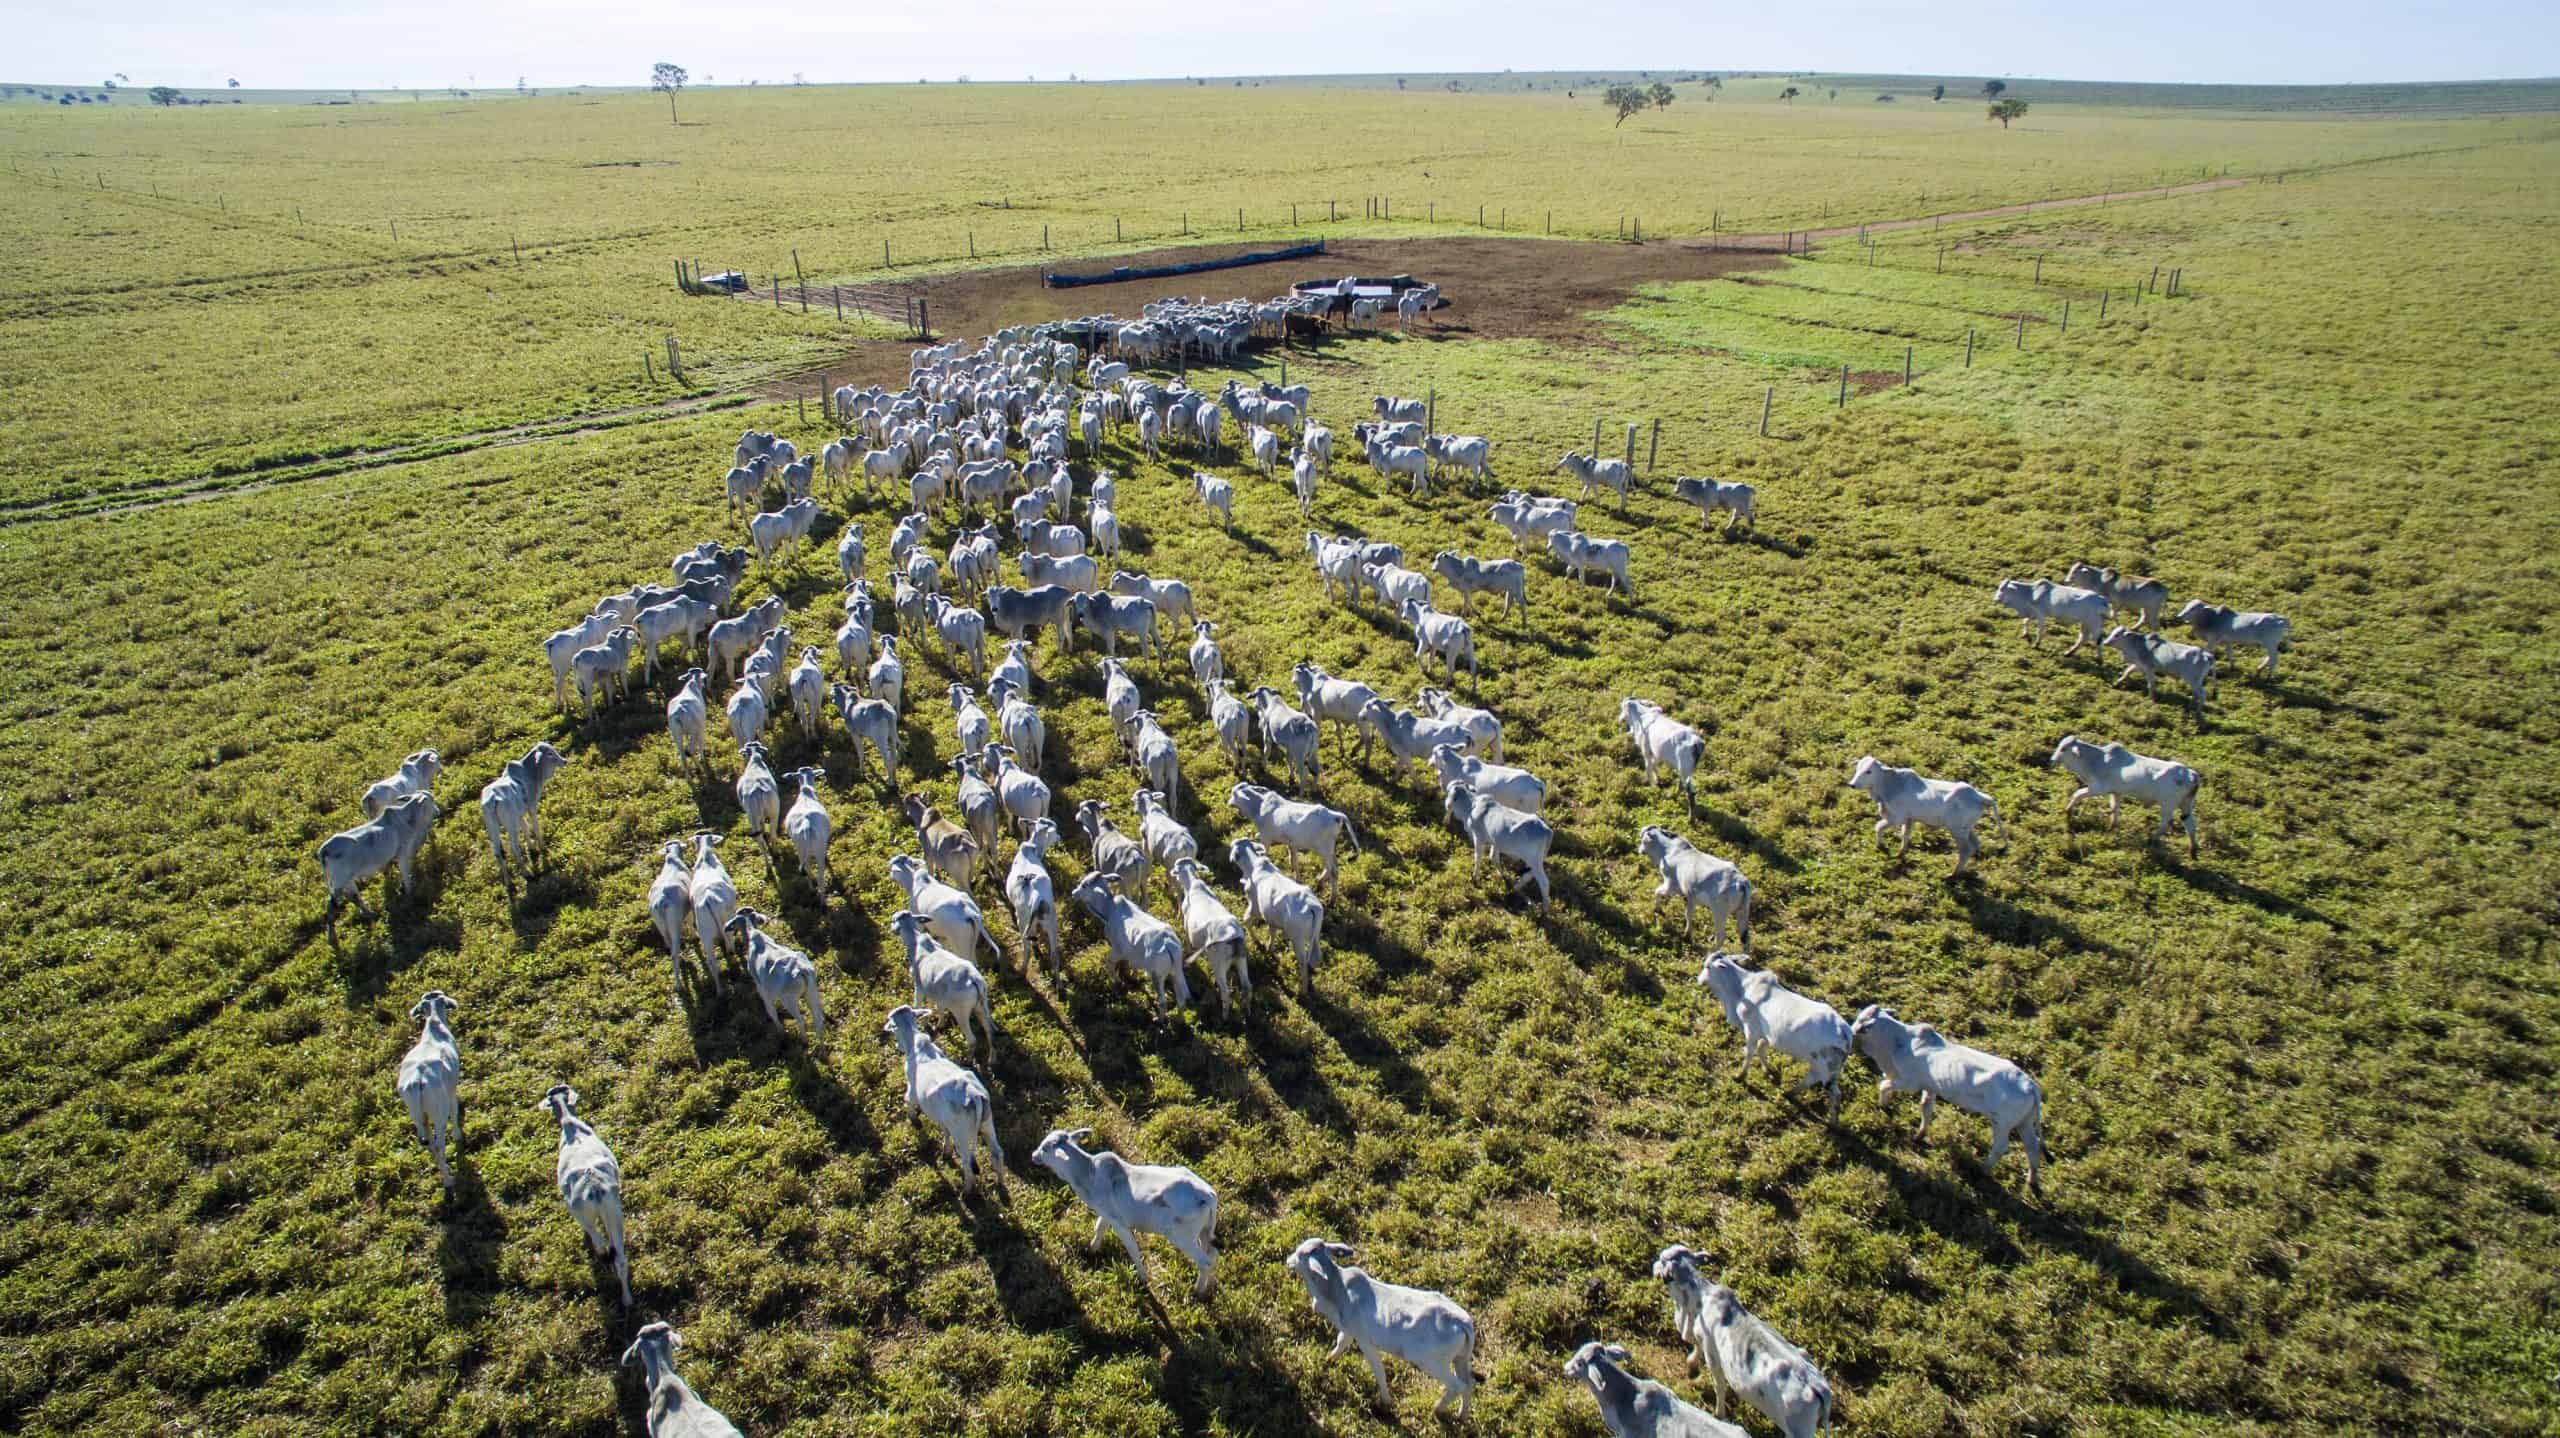 Cattle farm, Mato Grosso